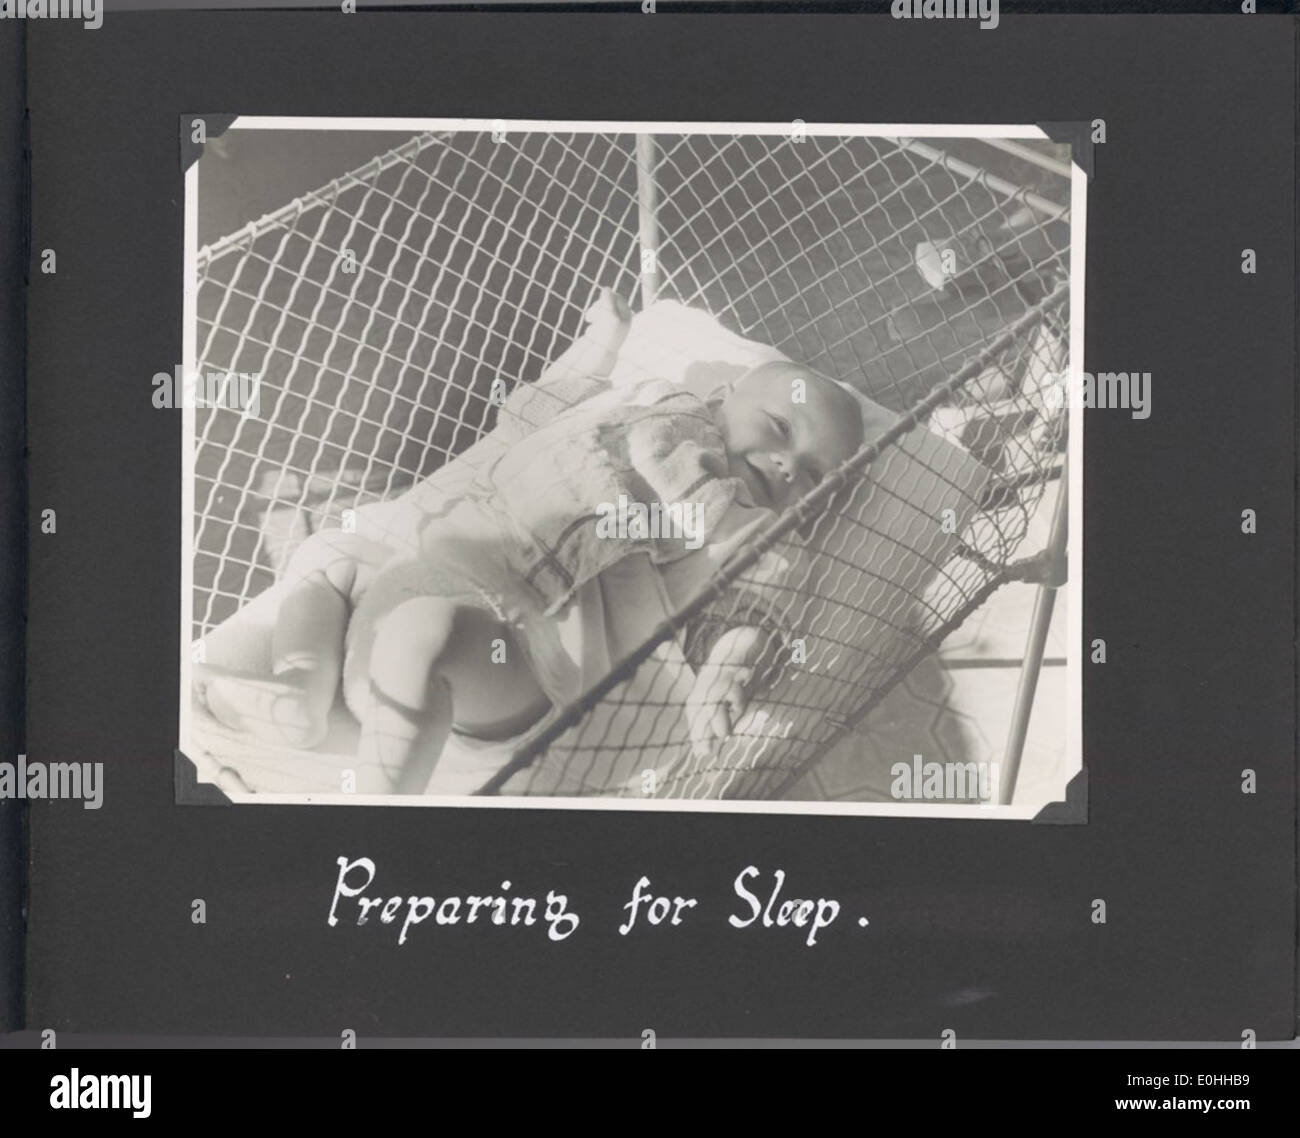 Sydney-Kinderkrippen und Kindergärten-Foto-Album. Foto von Baby liegend im Kinderbett, beschriftet "Vorbereitung für Schlaf". Stockfoto